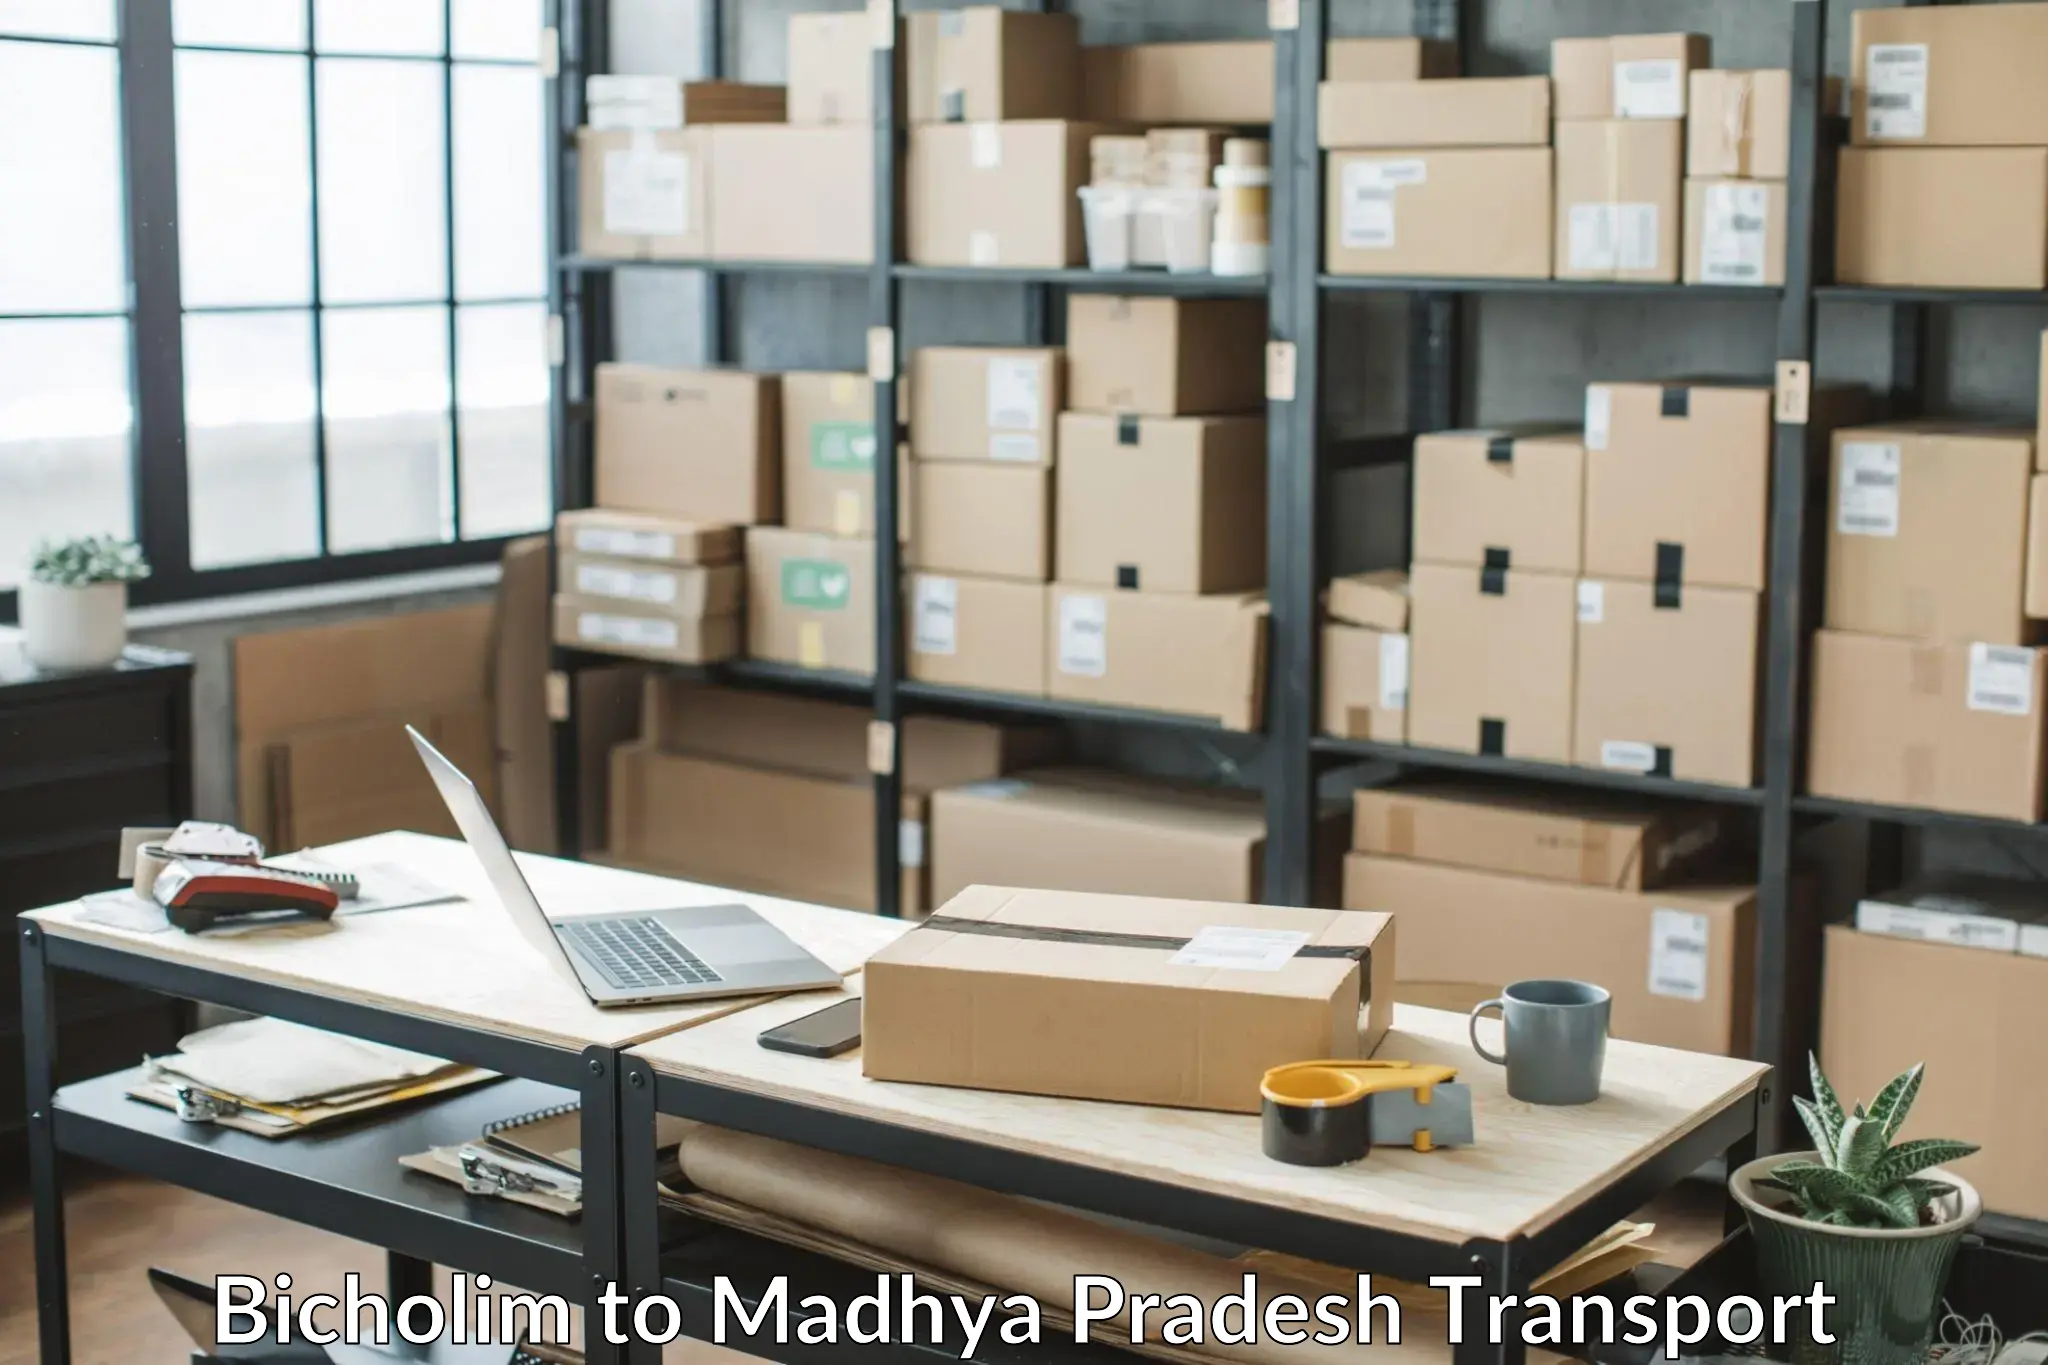 Shipping partner in Bicholim to Mandla